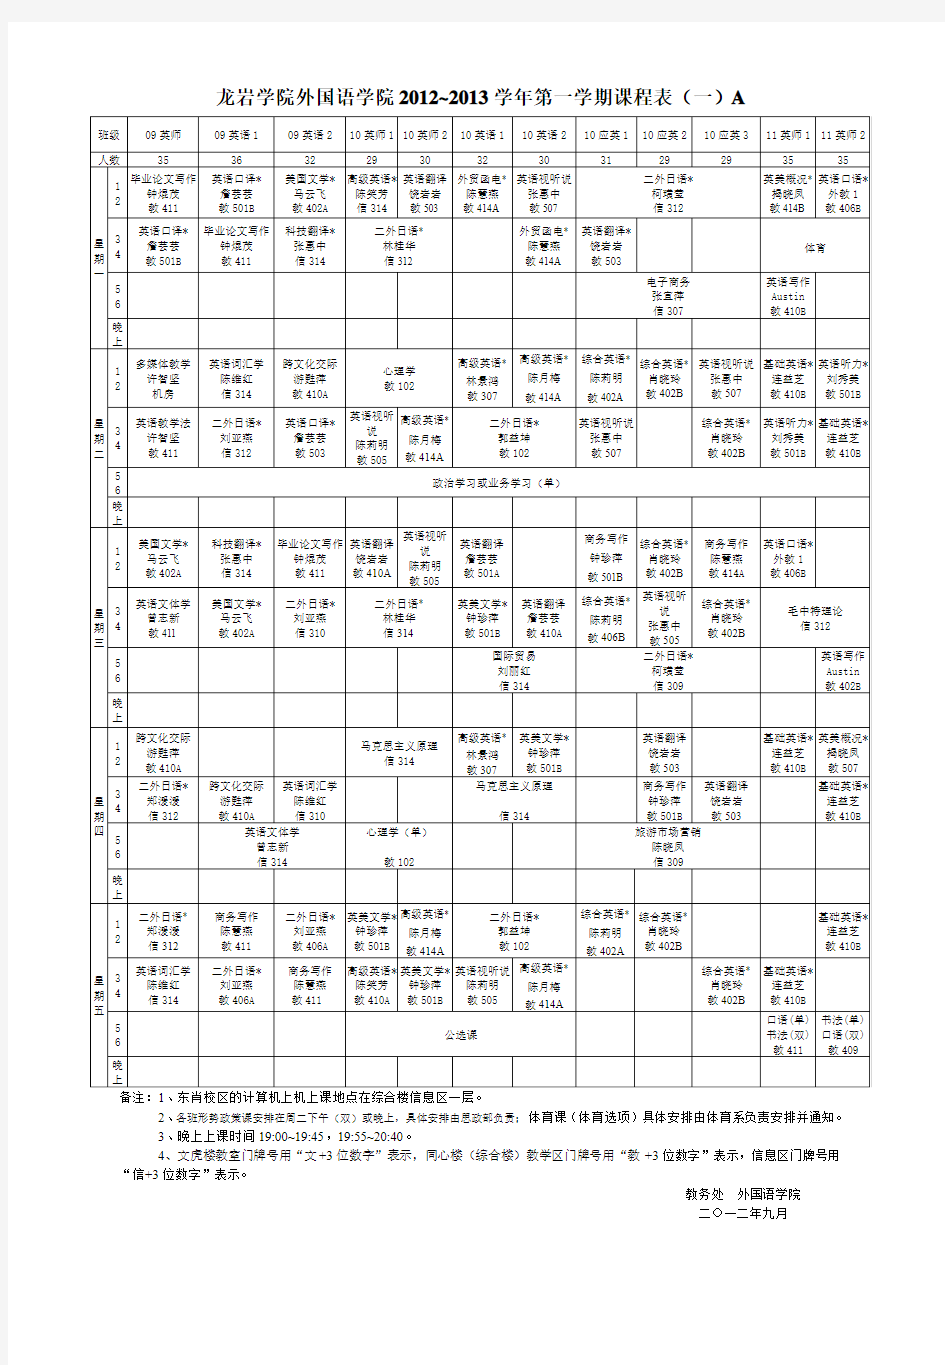 龙岩学院2012-2013(1)l全校课程表